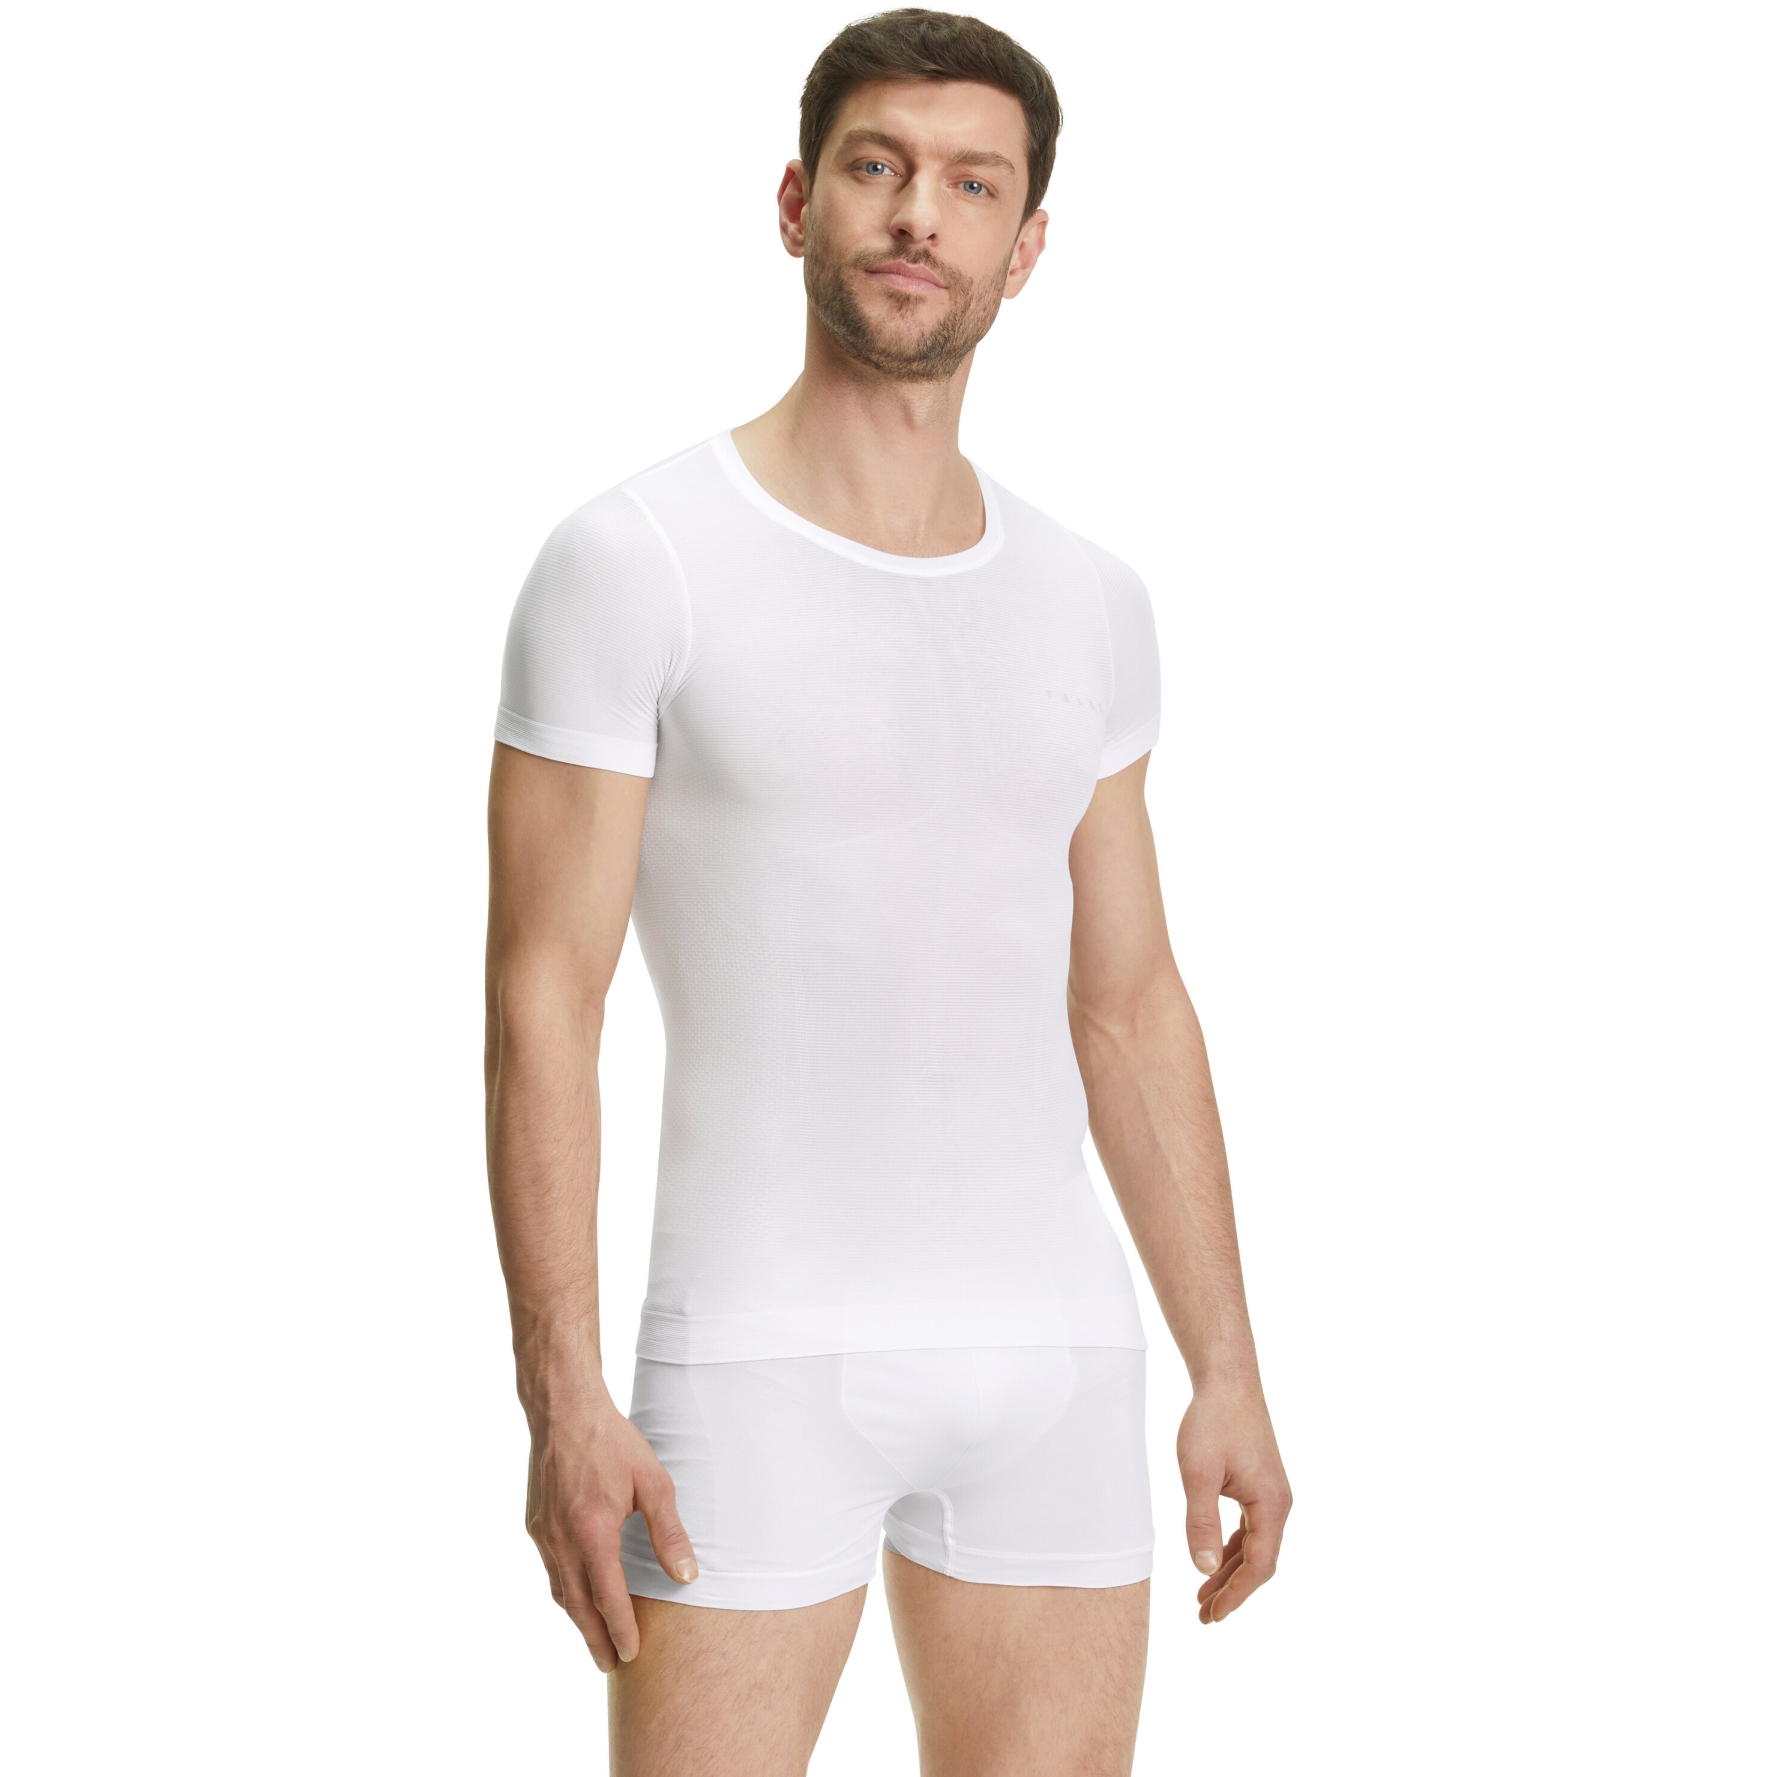 Picture of Falke Ultralight Cool Short Sleeve Shirt Men - white 2860